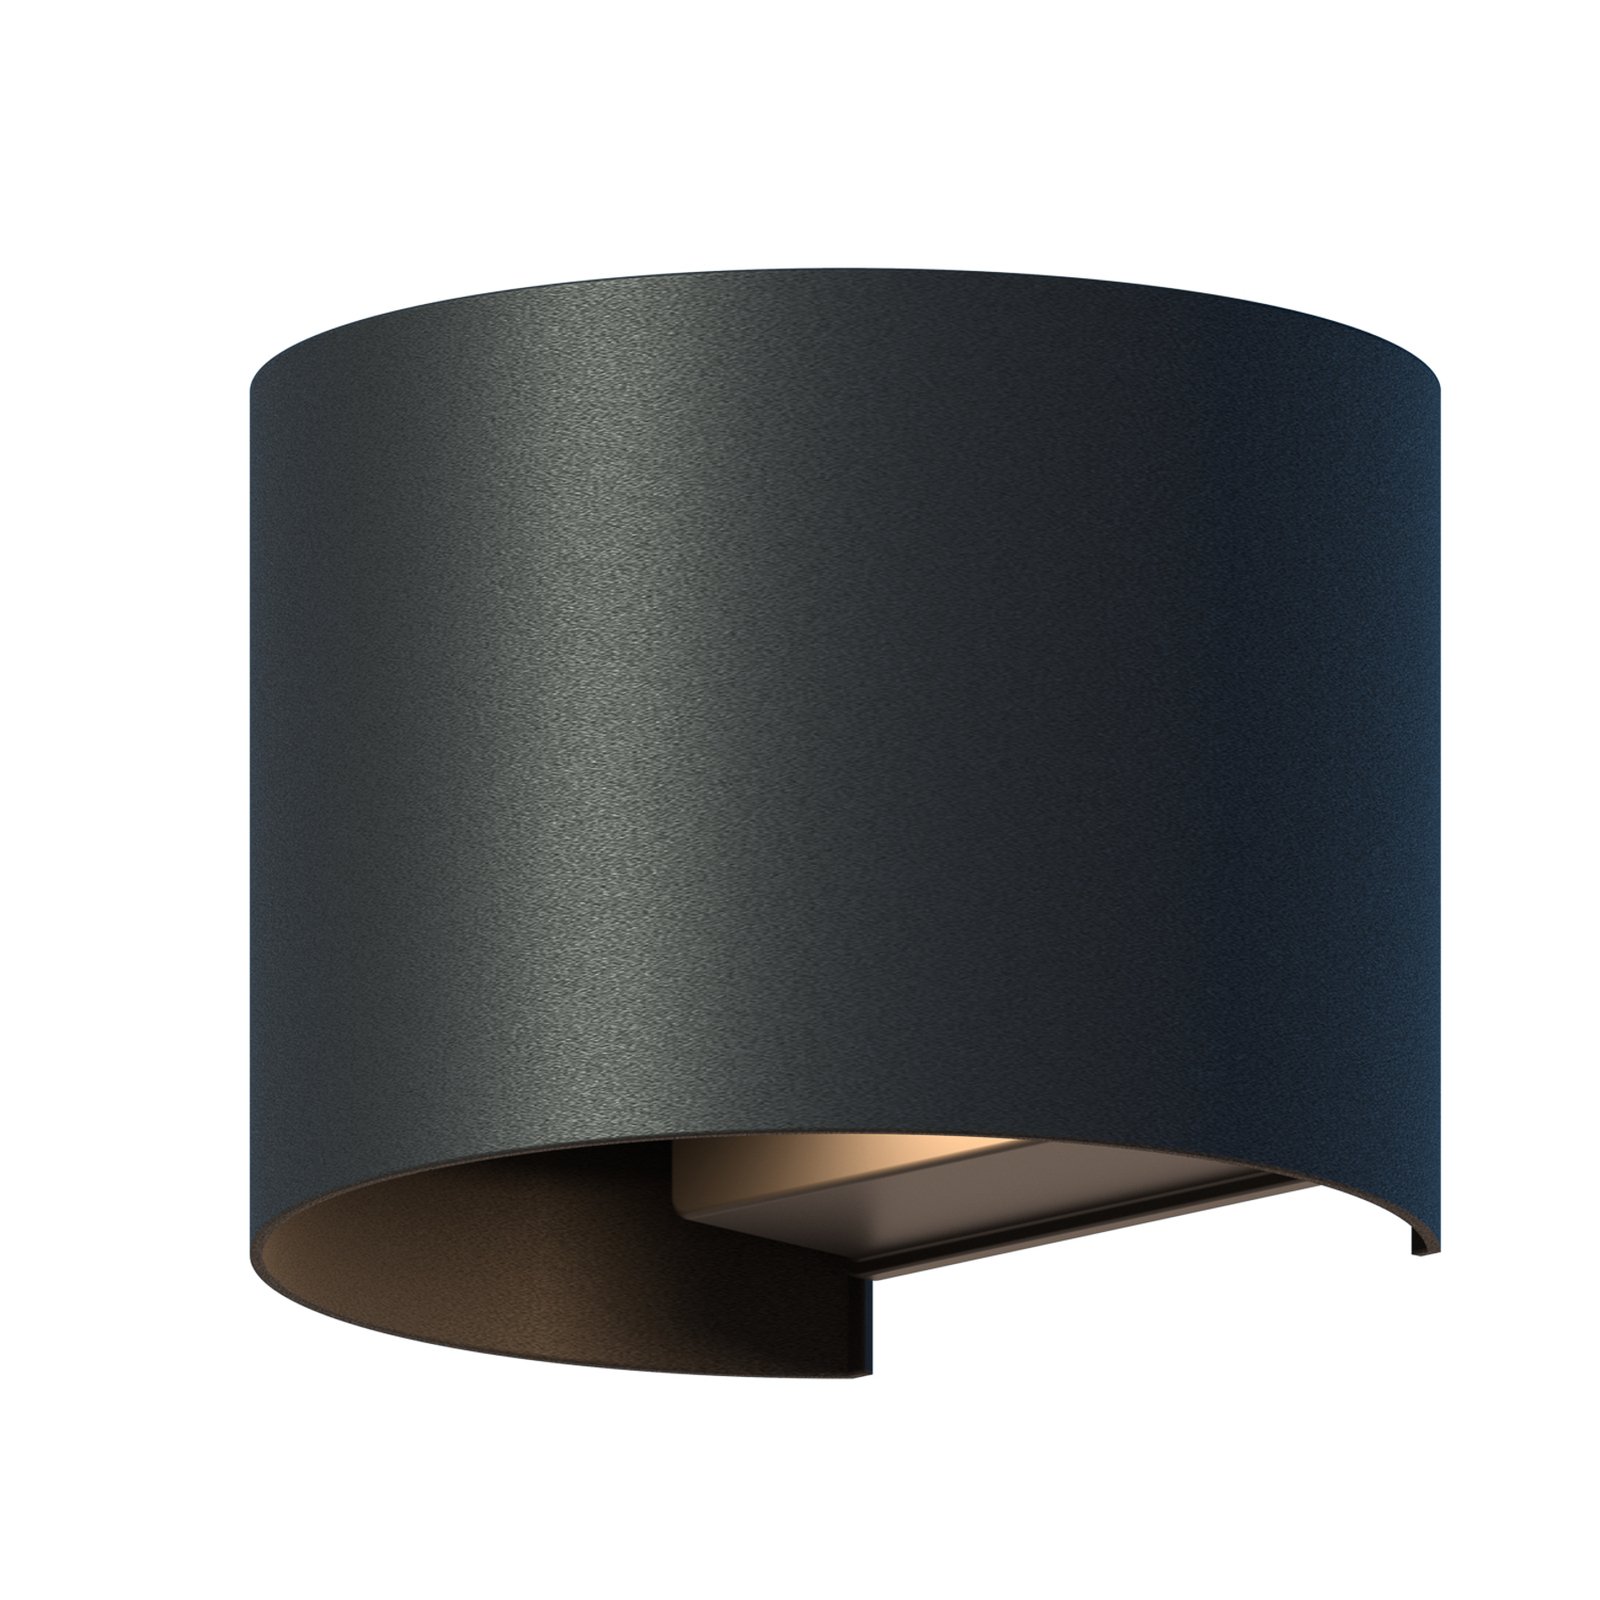 Calex LED buitenwandlamp Oval, Up, hoogte 10 cm, zwart